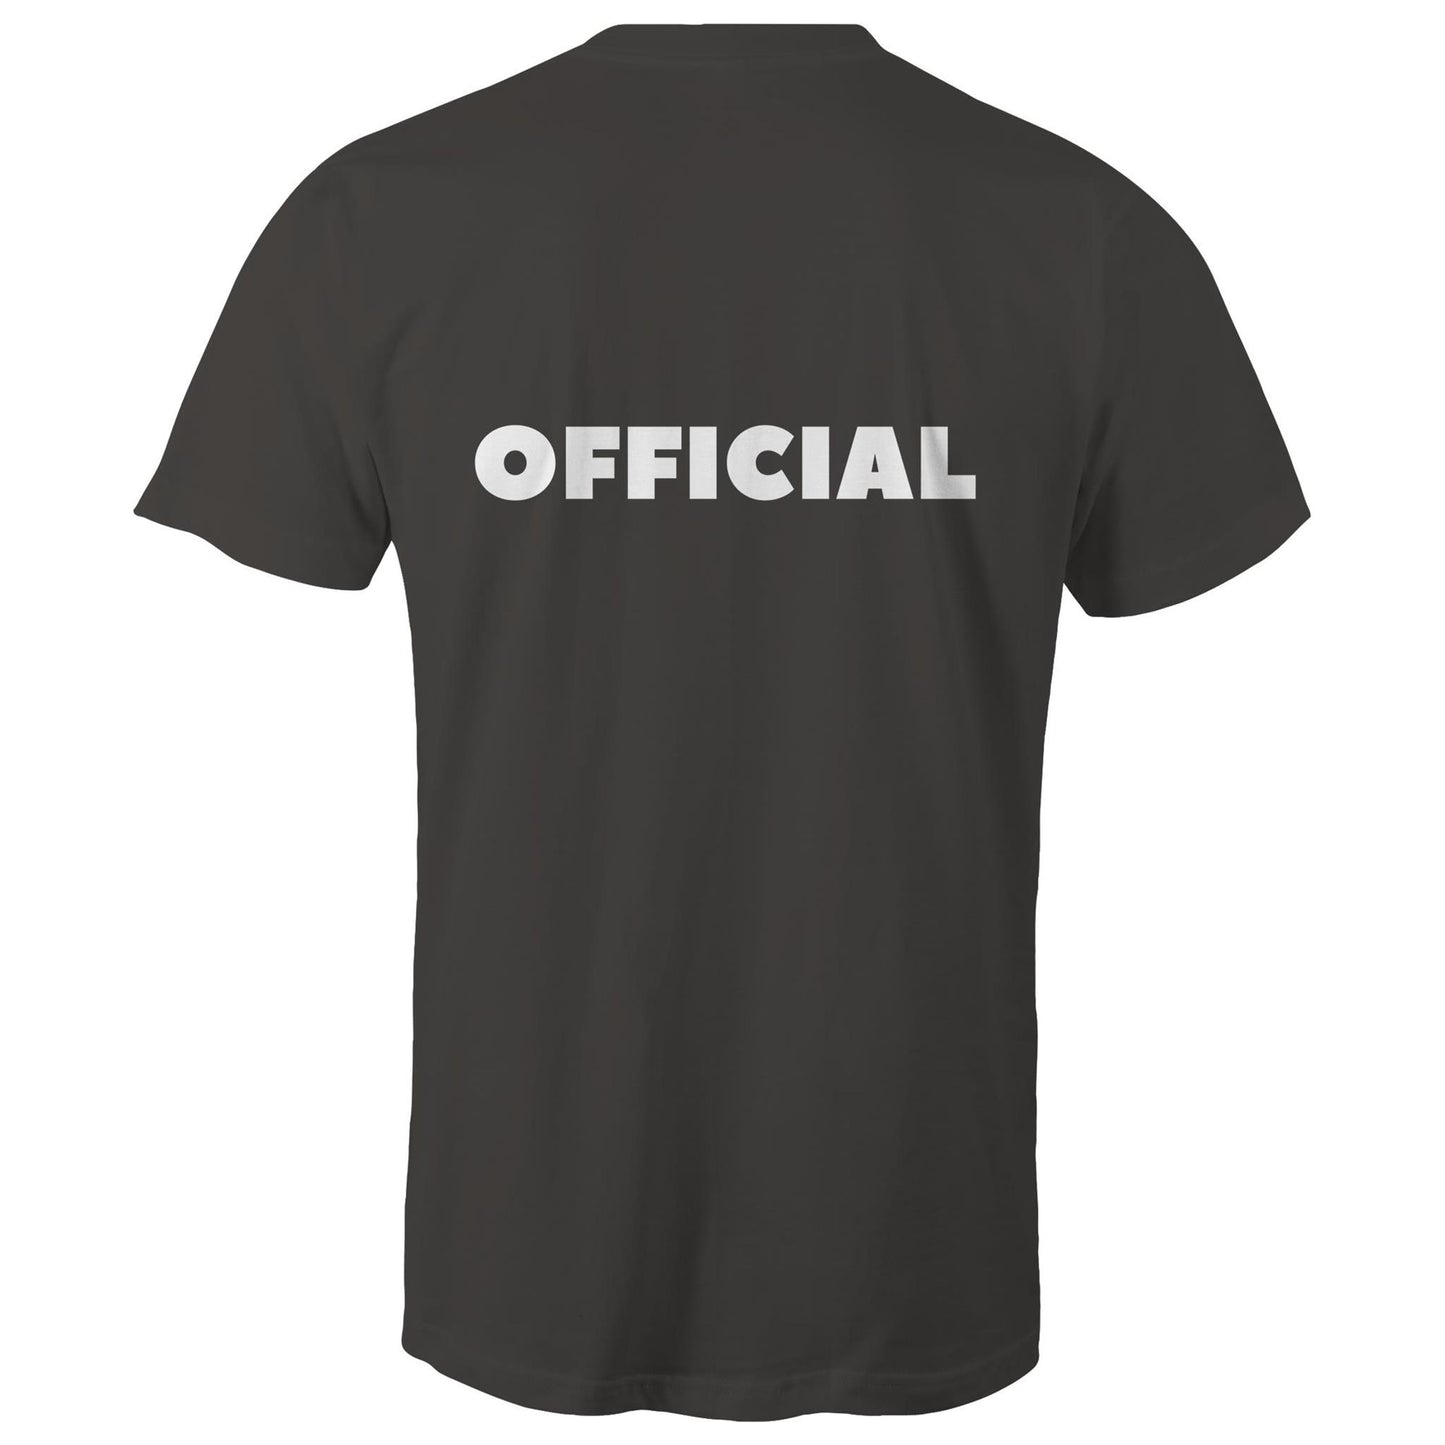 OFFICIAL - Unisex T-Shirt